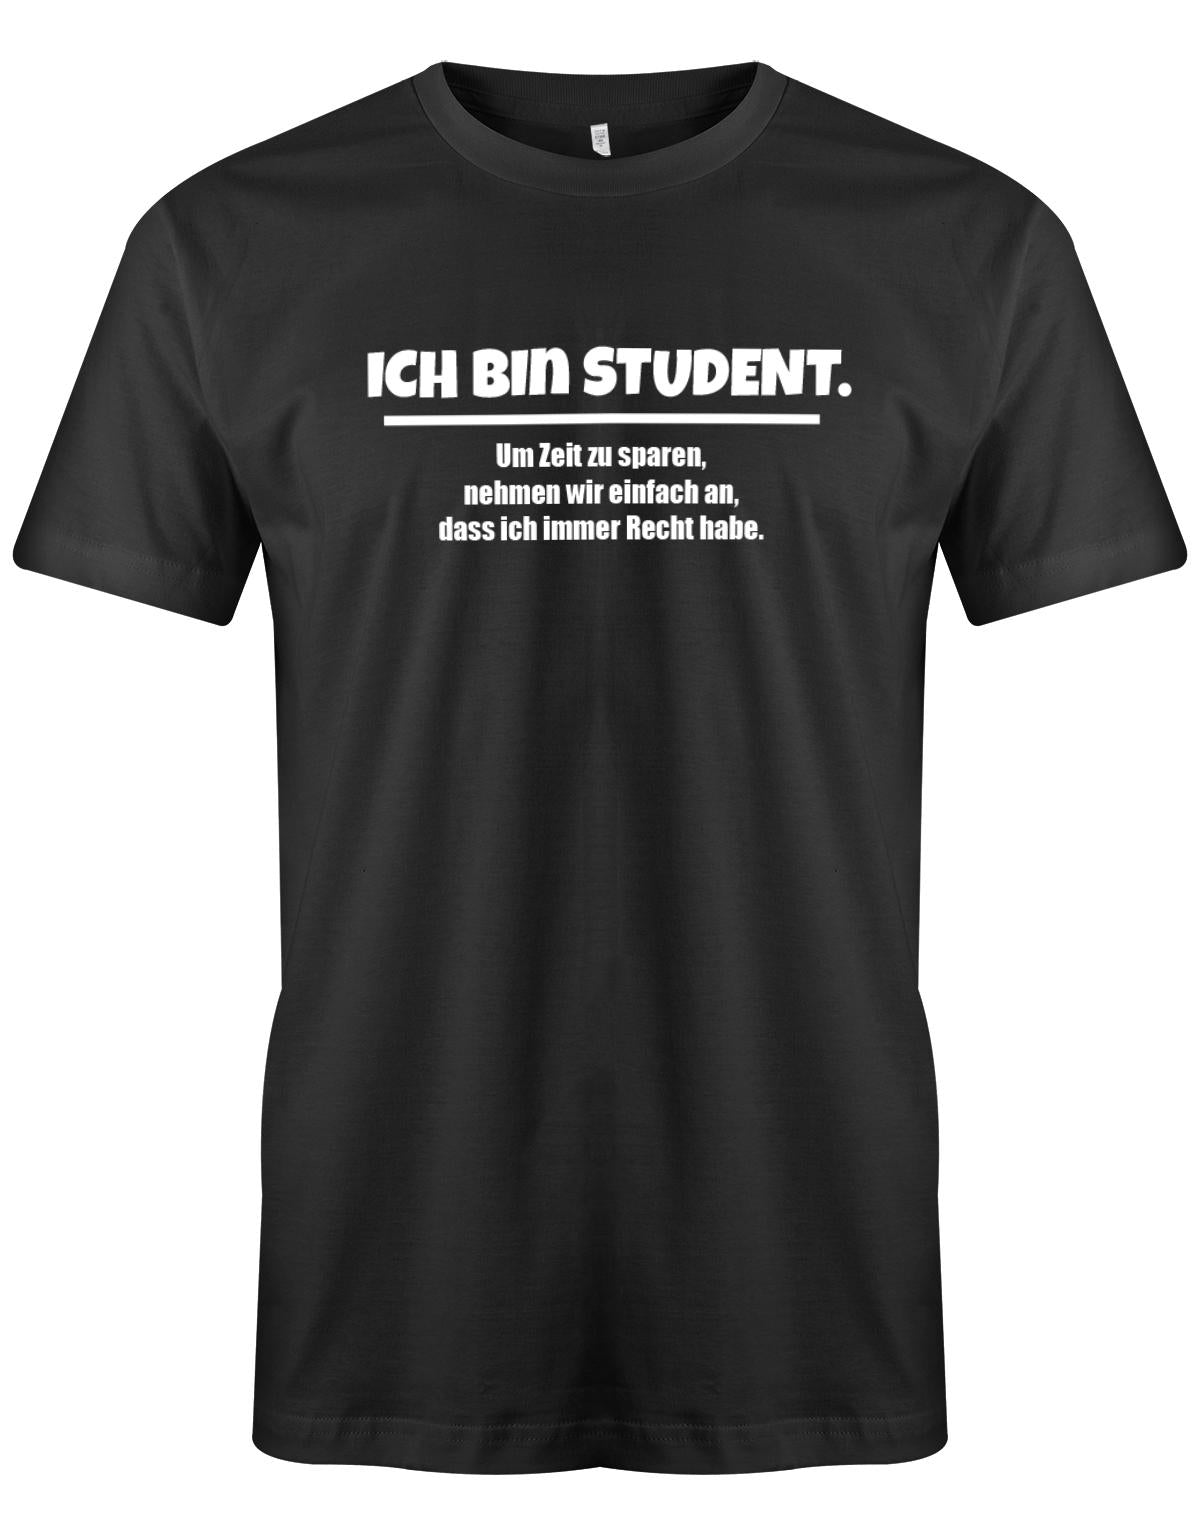 Ich-bin-Student-um-zeot-zu-sparen-habe-ich-recht-Herren-Spr-che-Studium-Shirt-Schwarz